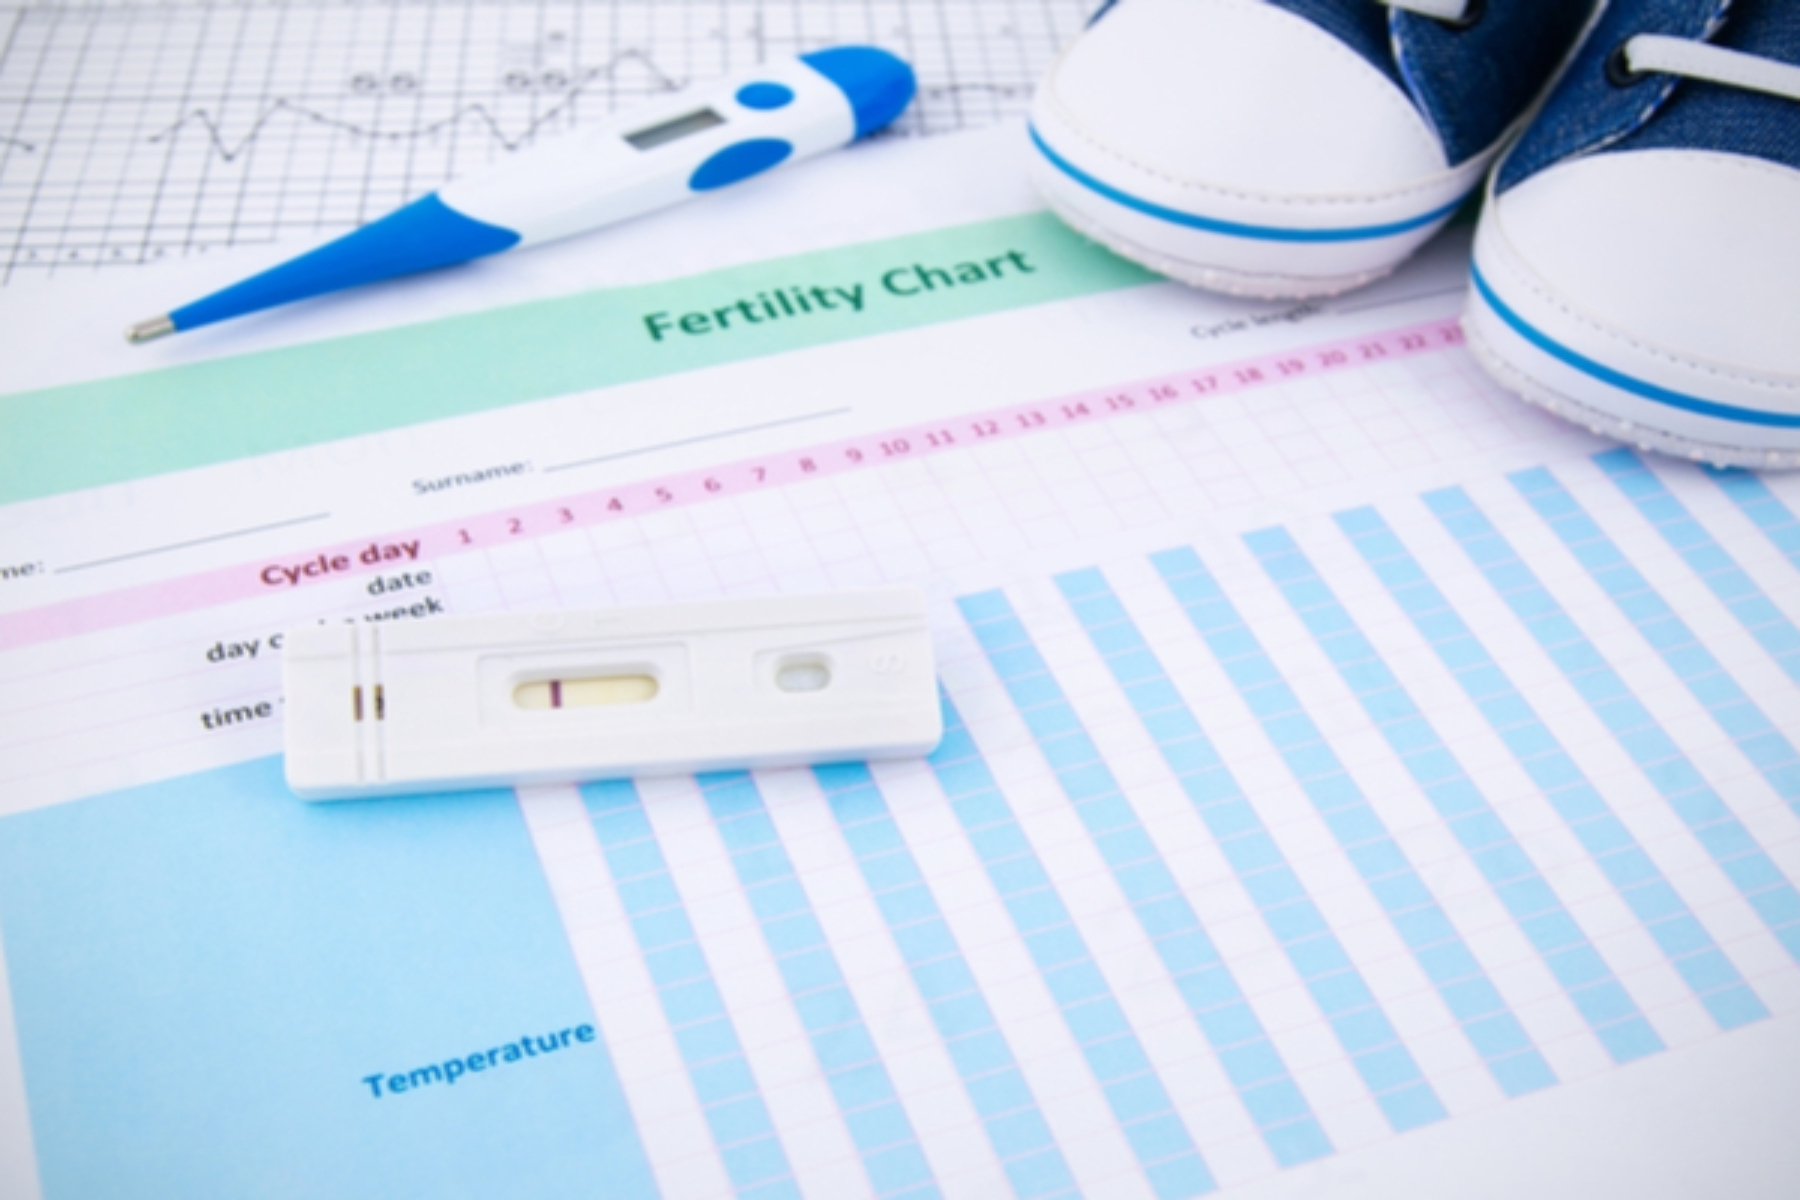 Τεστ γονιμότητας: Η αγορά τεστ γονιμότητας θα φτάσει τα 201,4 εκατομμύρια δολάρια έως το 2027